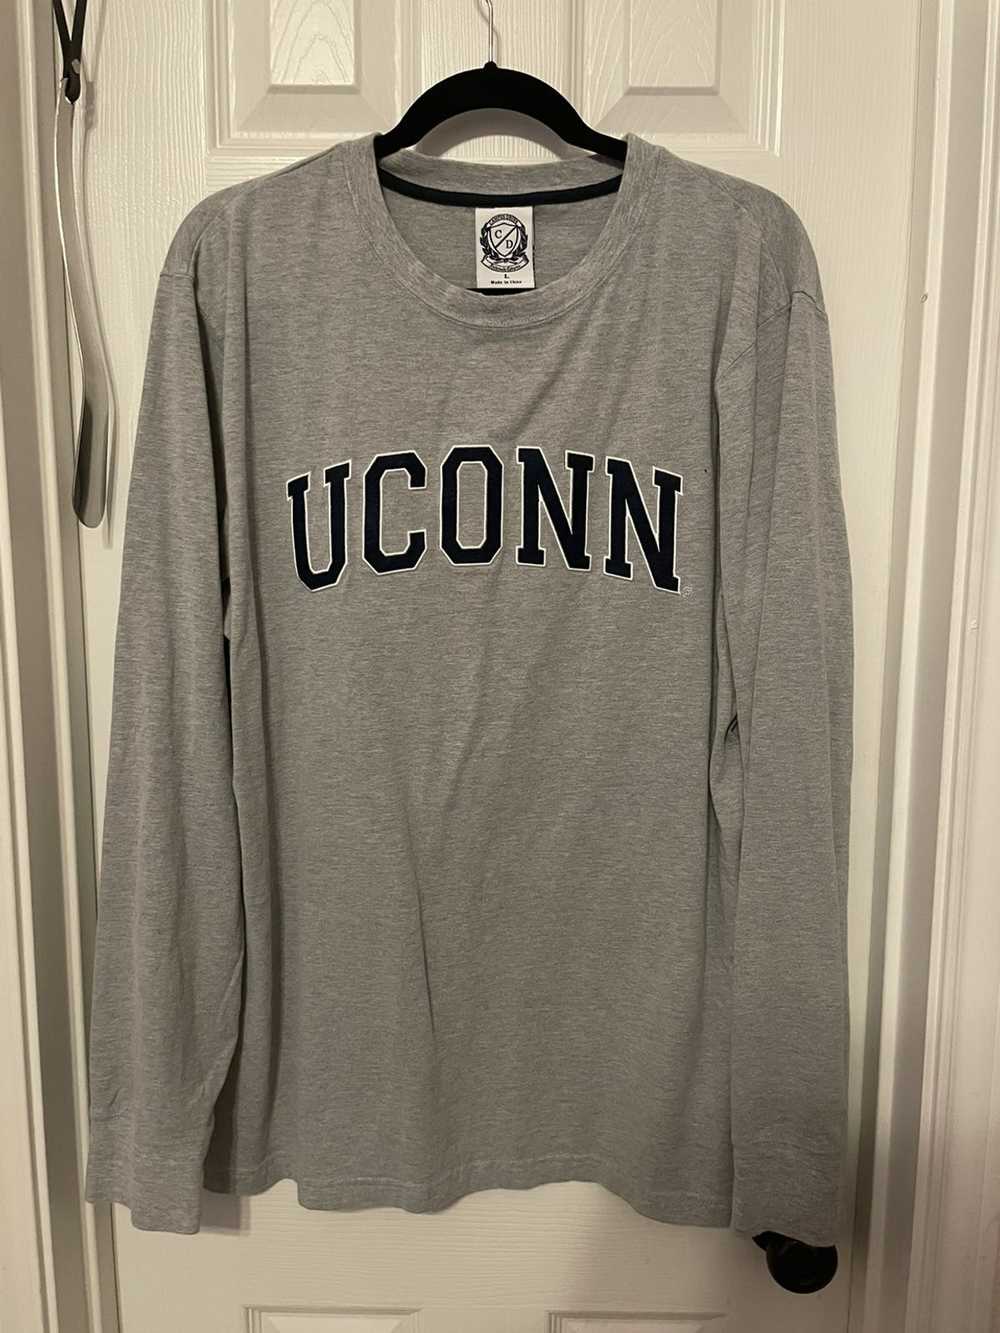 Vintage UCONN Vintage Sweatshirt - image 1